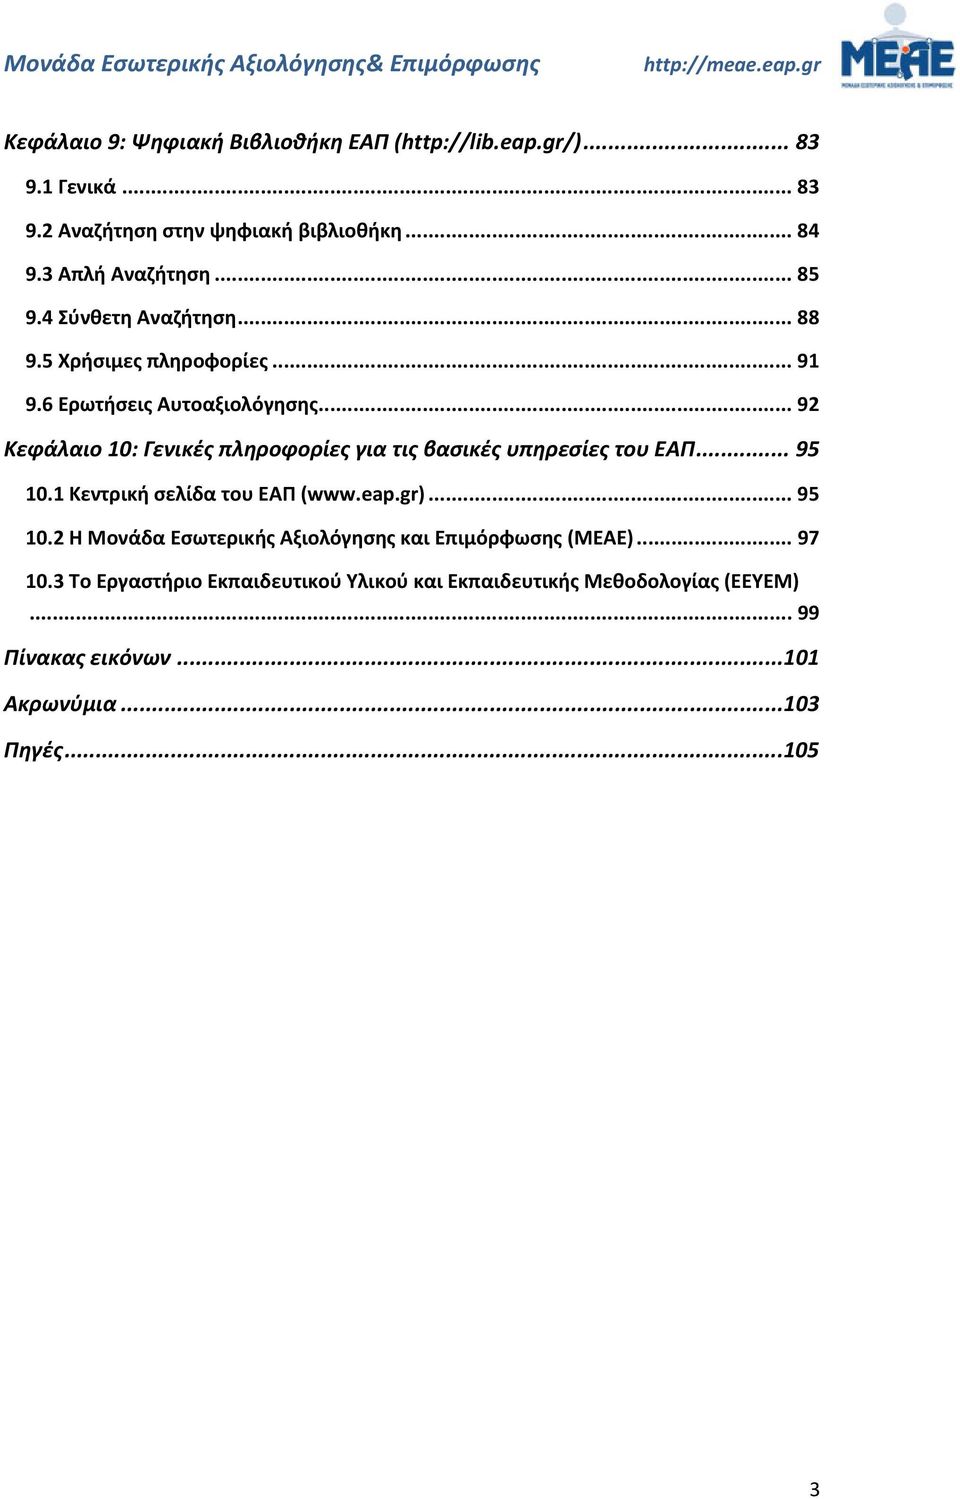 .. 92 Κεφάλαιο 10: Γενικές πληροφορίες για τις βασικές υπηρεσίες του ΕΑΠ... 95 10.1 Κεντρική σελίδα του ΕΑΠ (www.eap.gr)... 95 10.2 Η Μονάδα Εσωτερικής Αξιολόγησης και Επιμόρφωσης (MEAE).